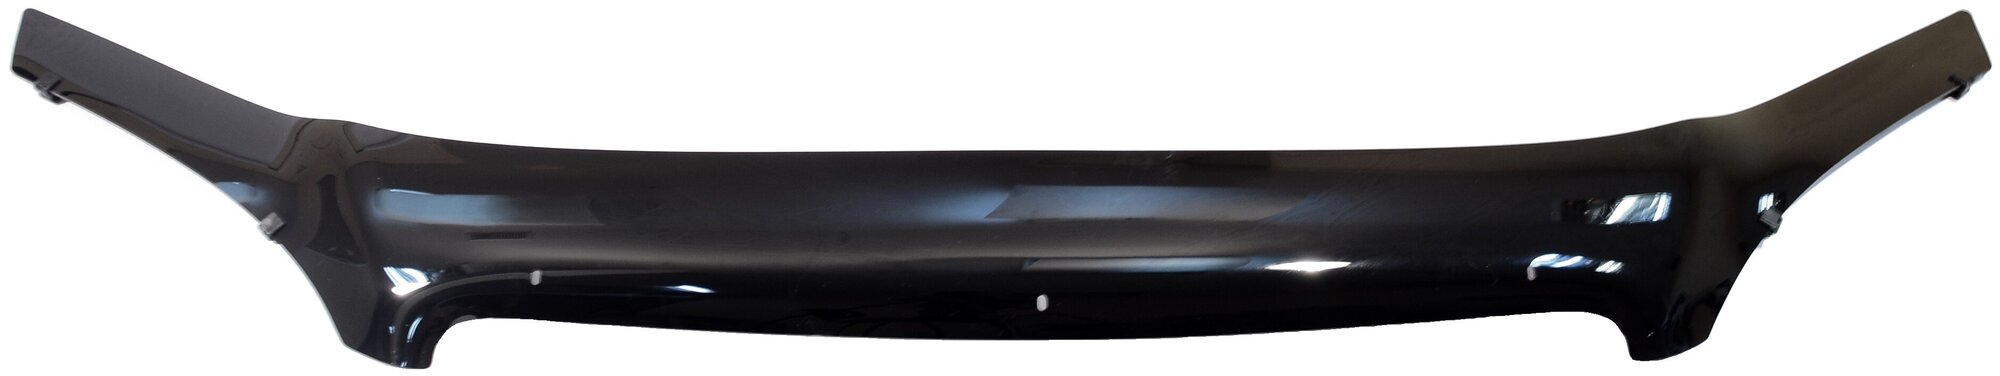 Дефлектор капота SIM SCHLAC0412 для Chevrolet Lacetti